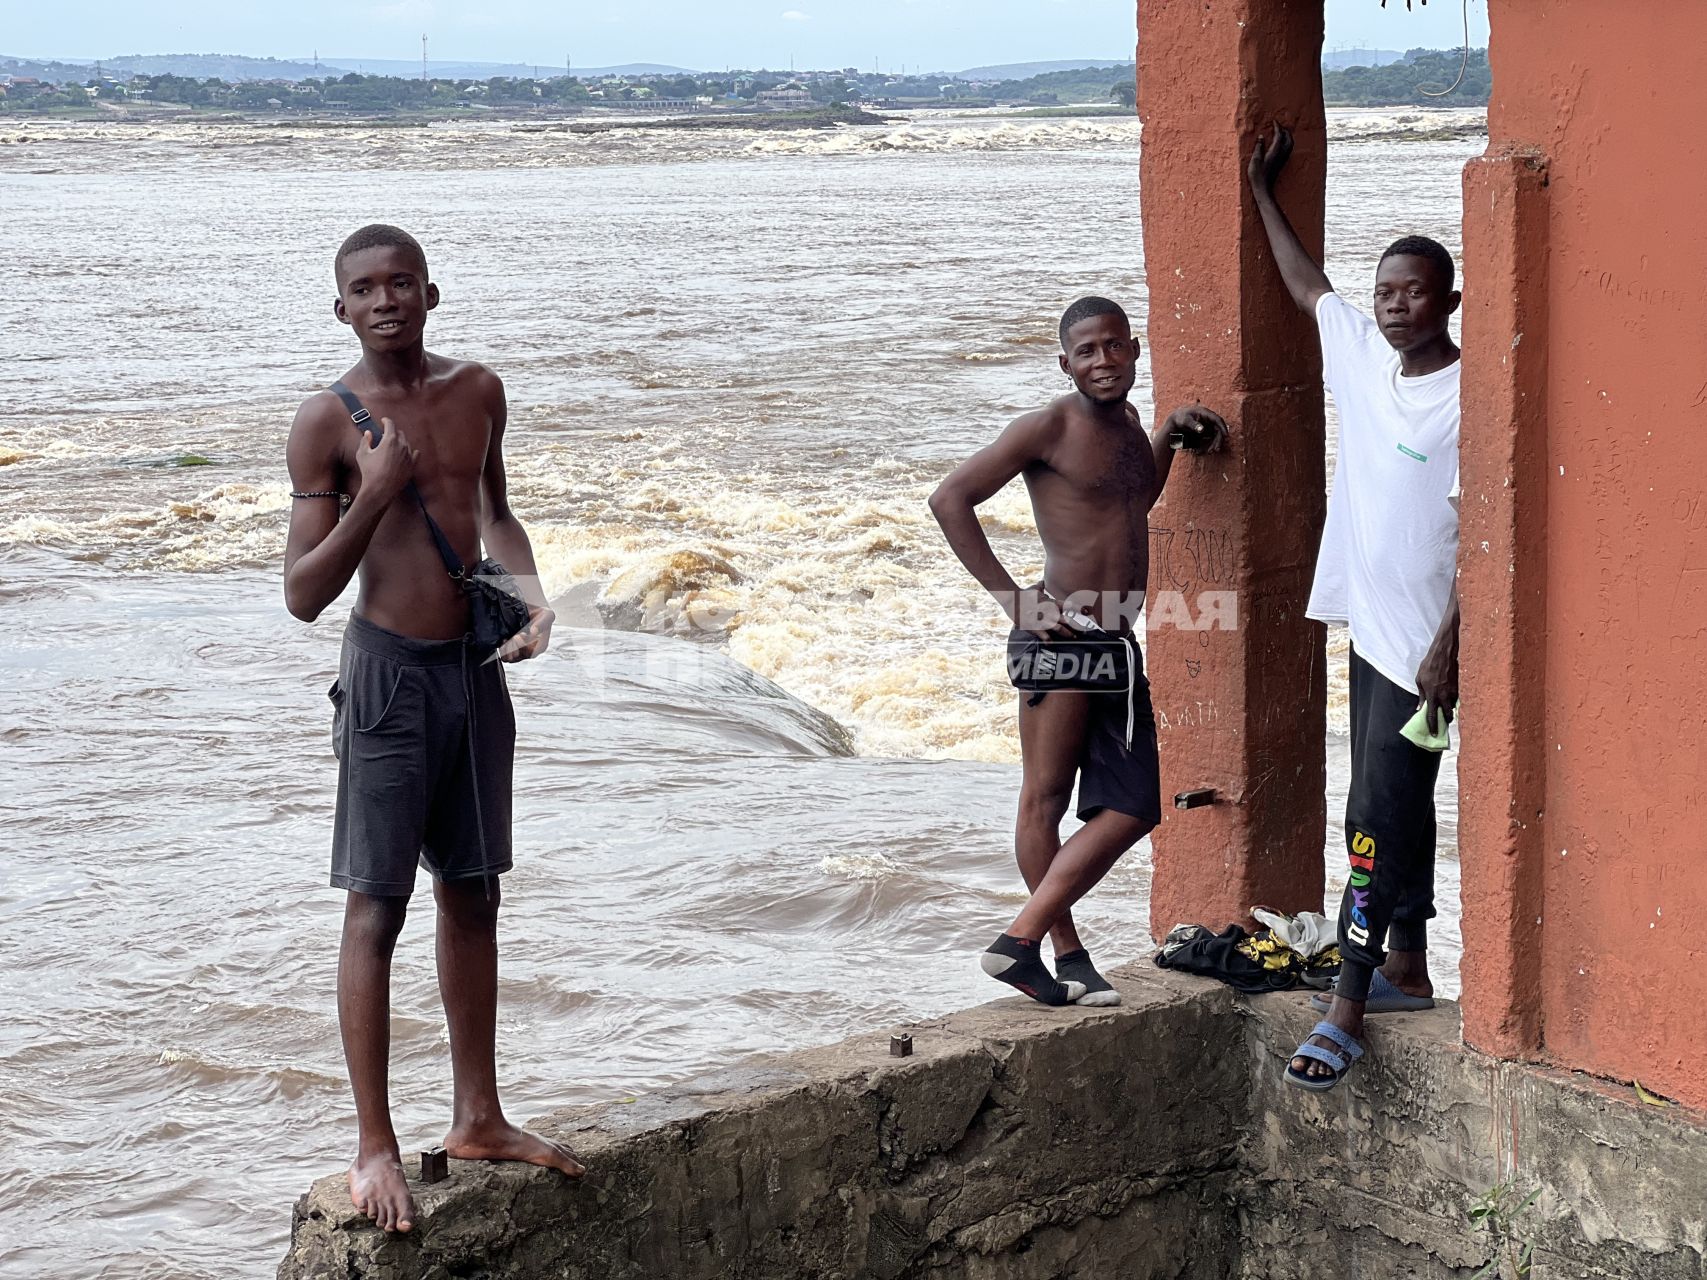 Республика Конго. г. Браззавиль. Конголезские парни развлекают туристов, прыгая с берега в бушующие воды реки Конго, а выбравшись обратно, требуют оплаты за шоу.